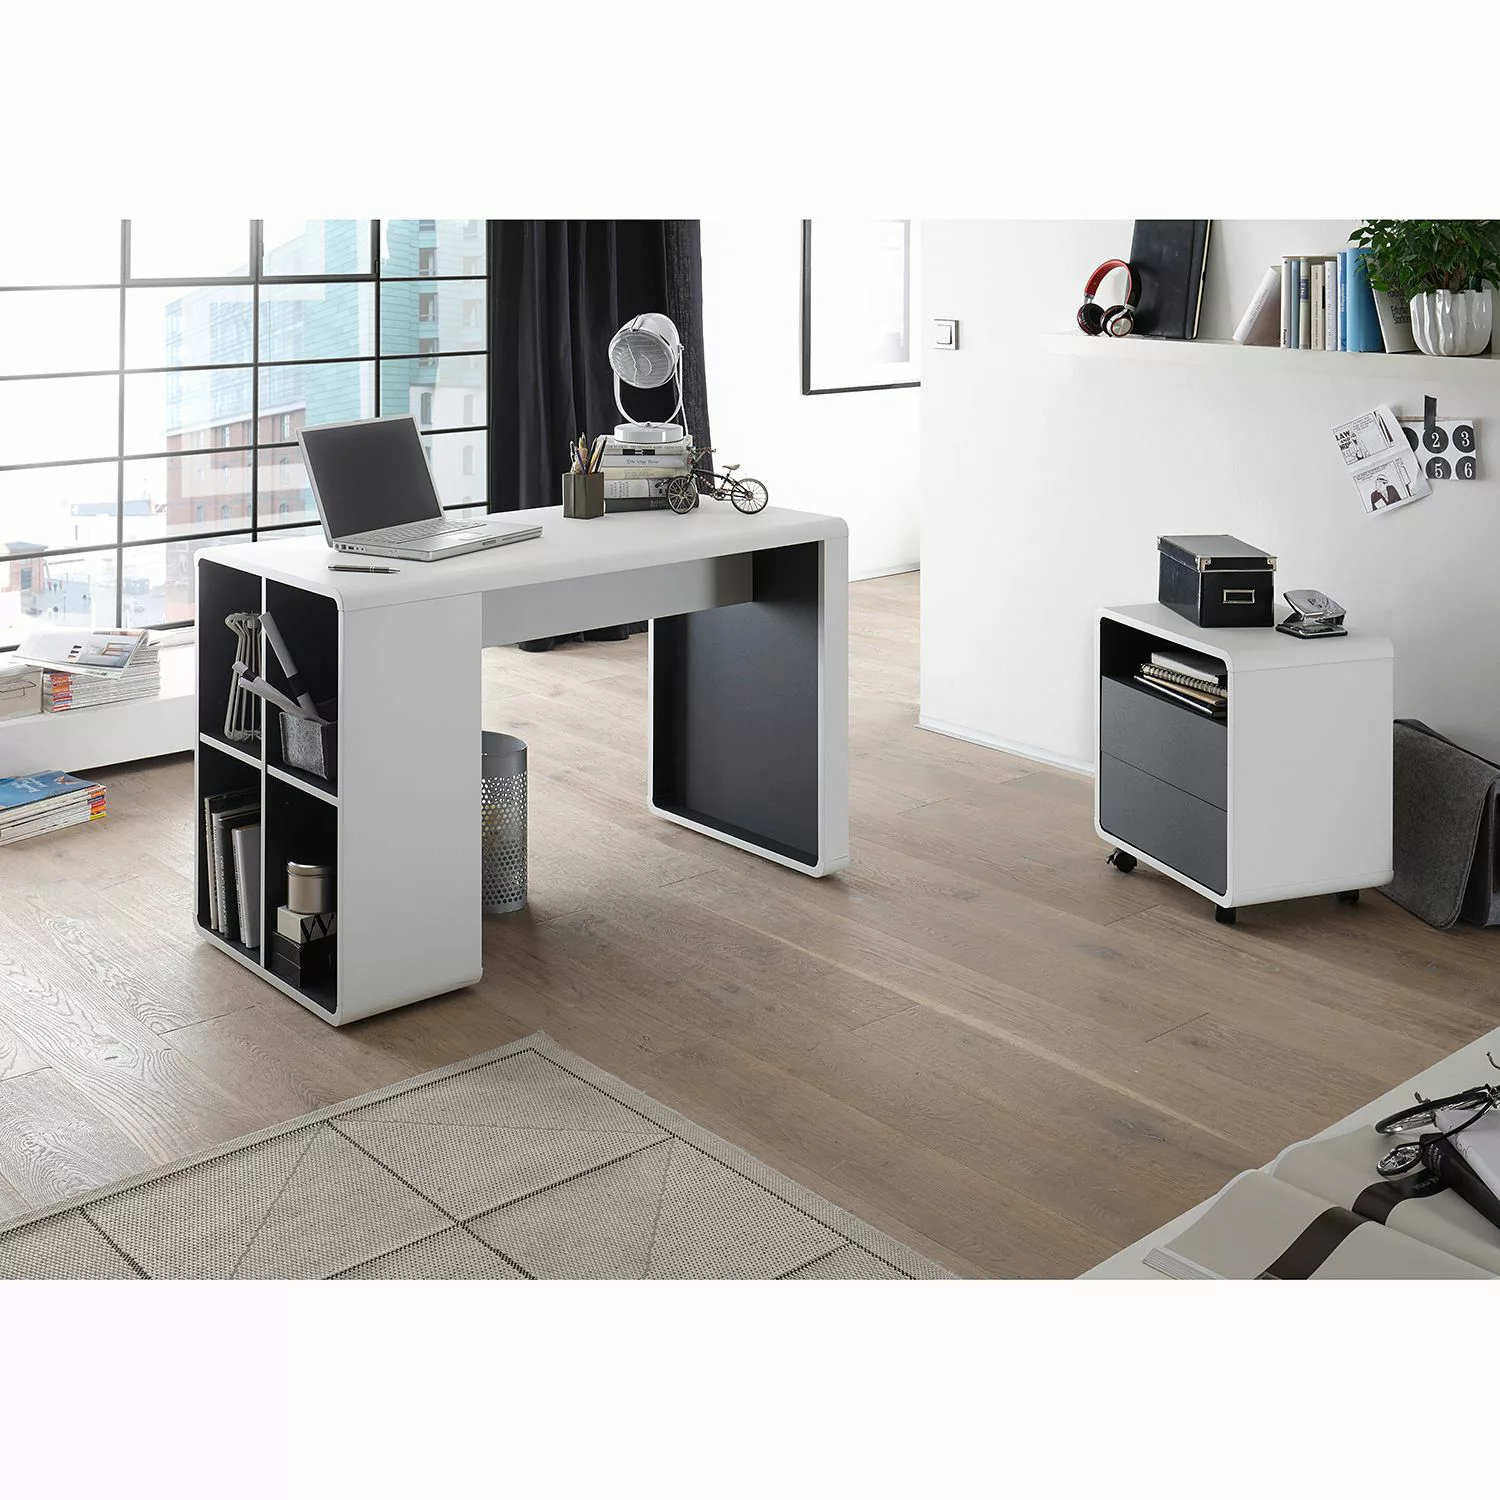 MCA furniture Mehrzweckschrank Rollcontainer Tadeo günstig online kaufen